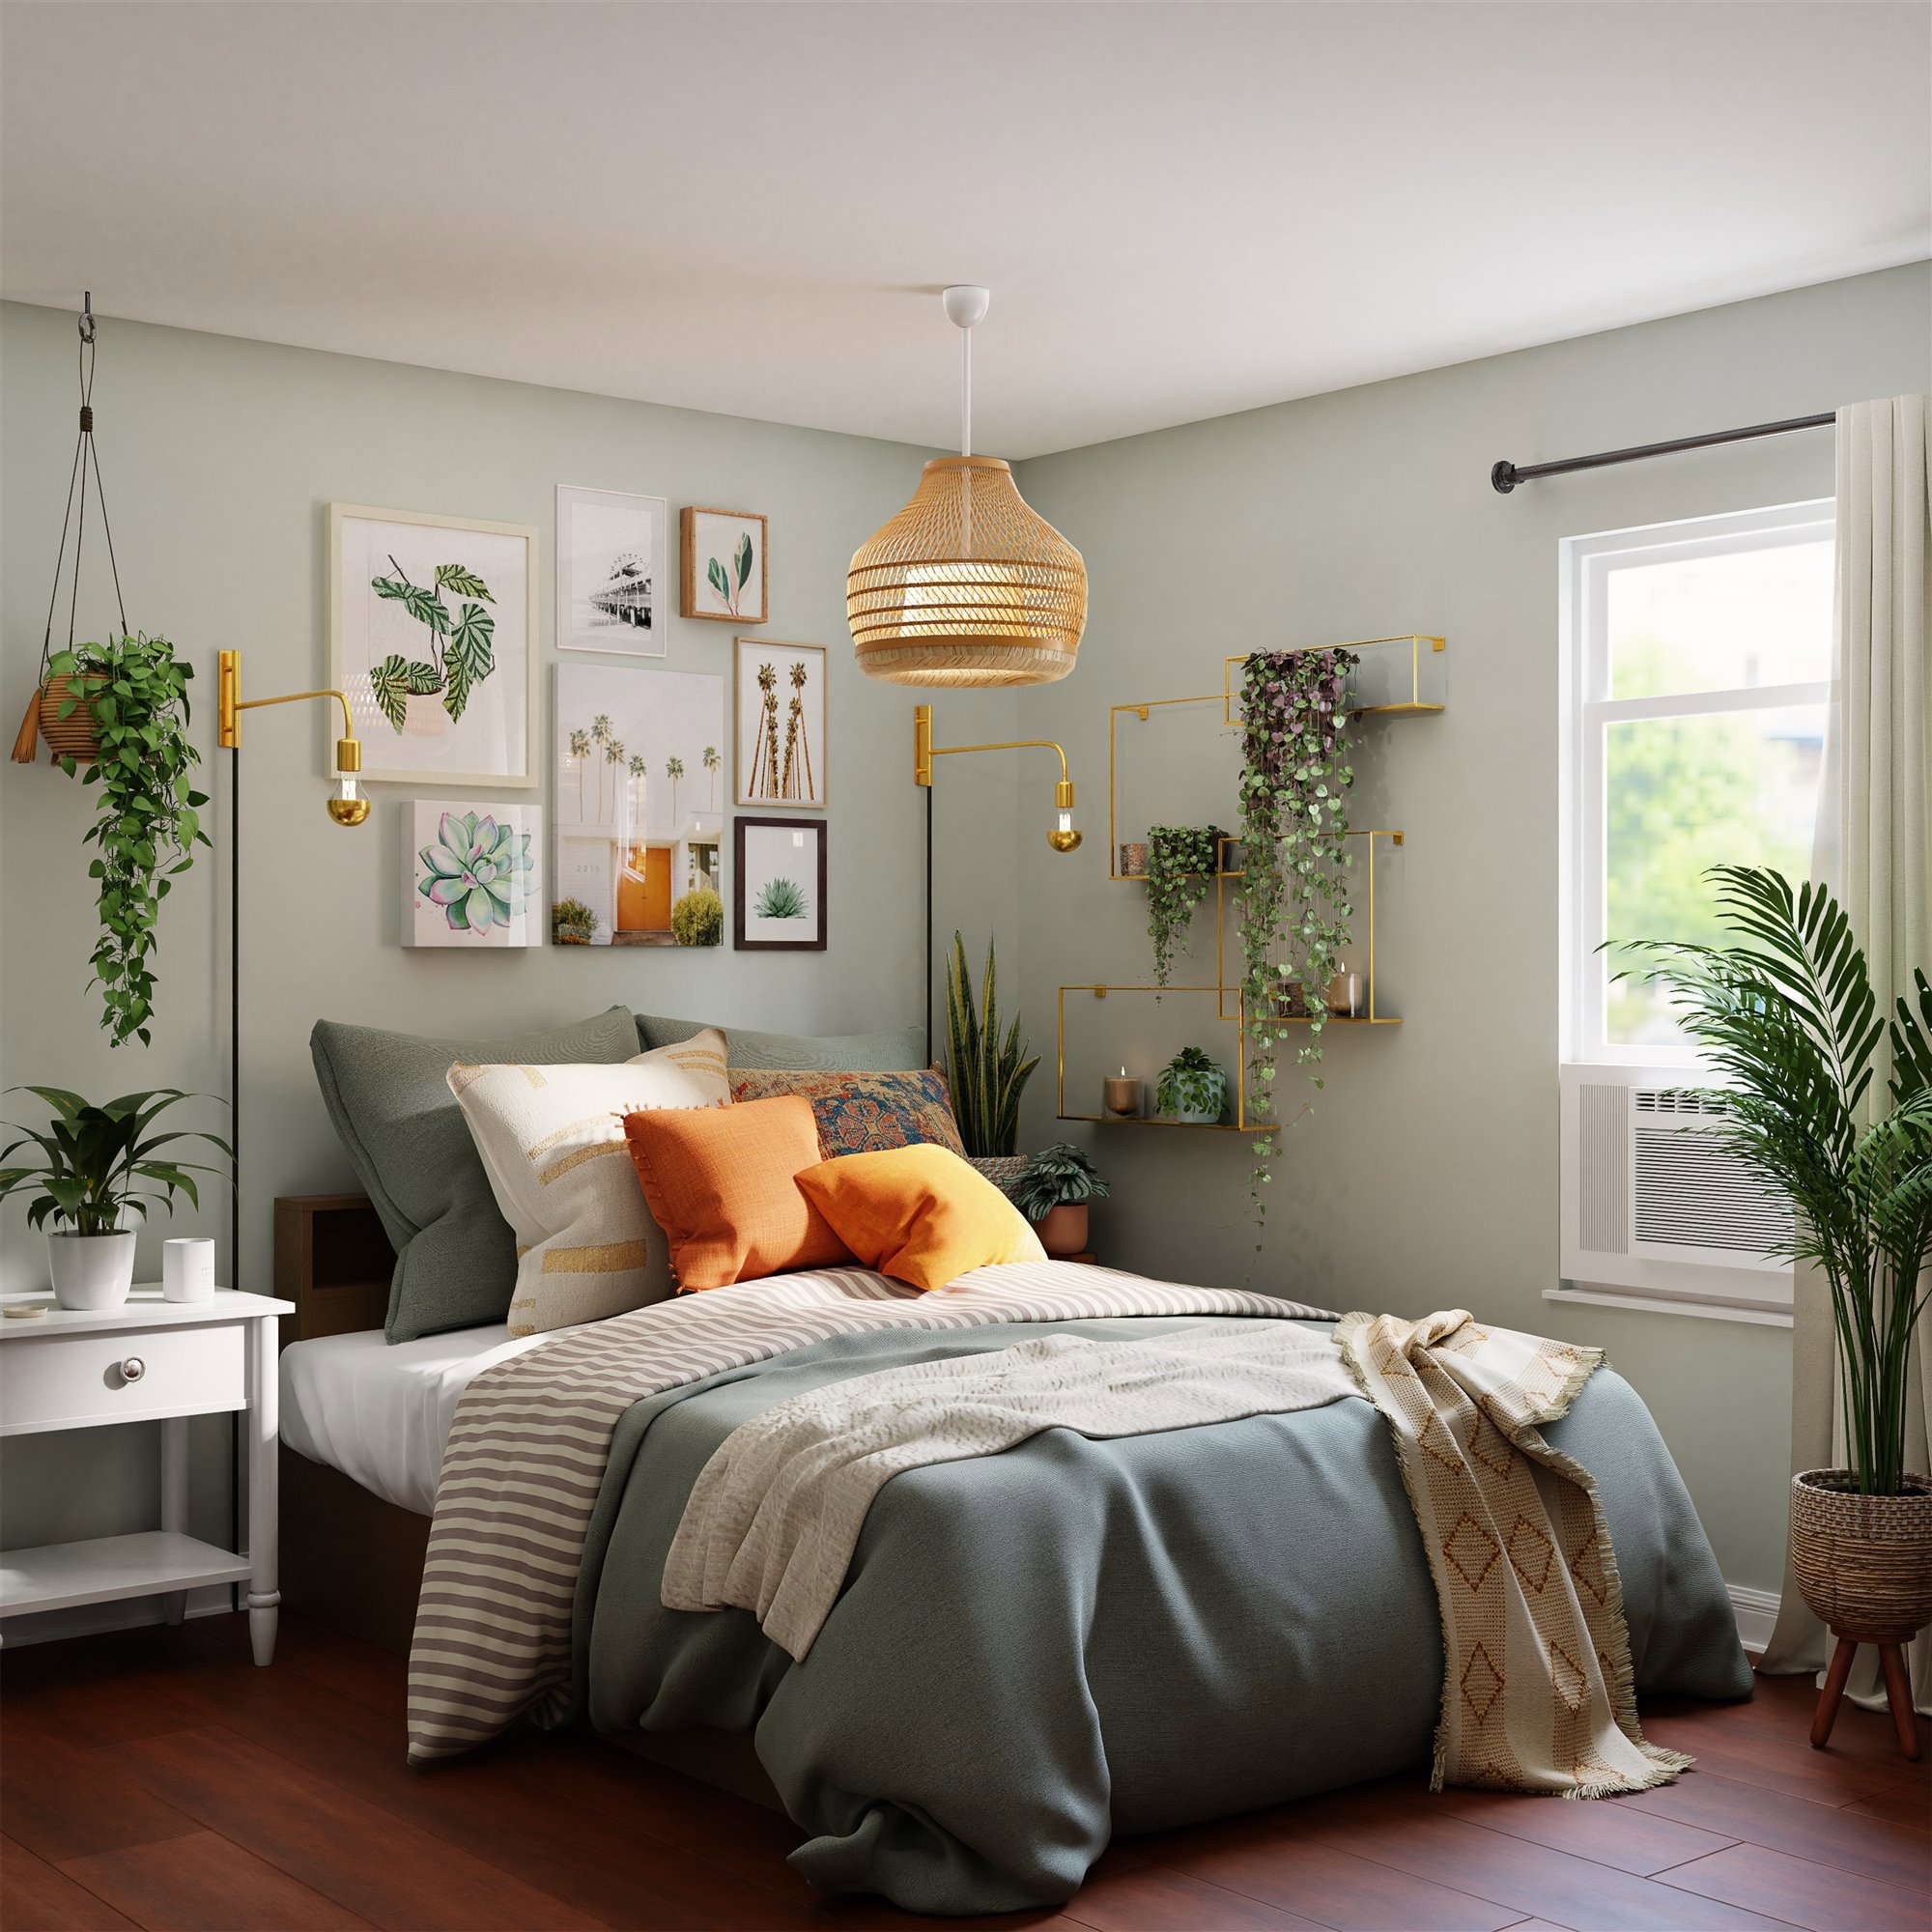 Dormitorio con plantas e imágenes con motivos naturales.